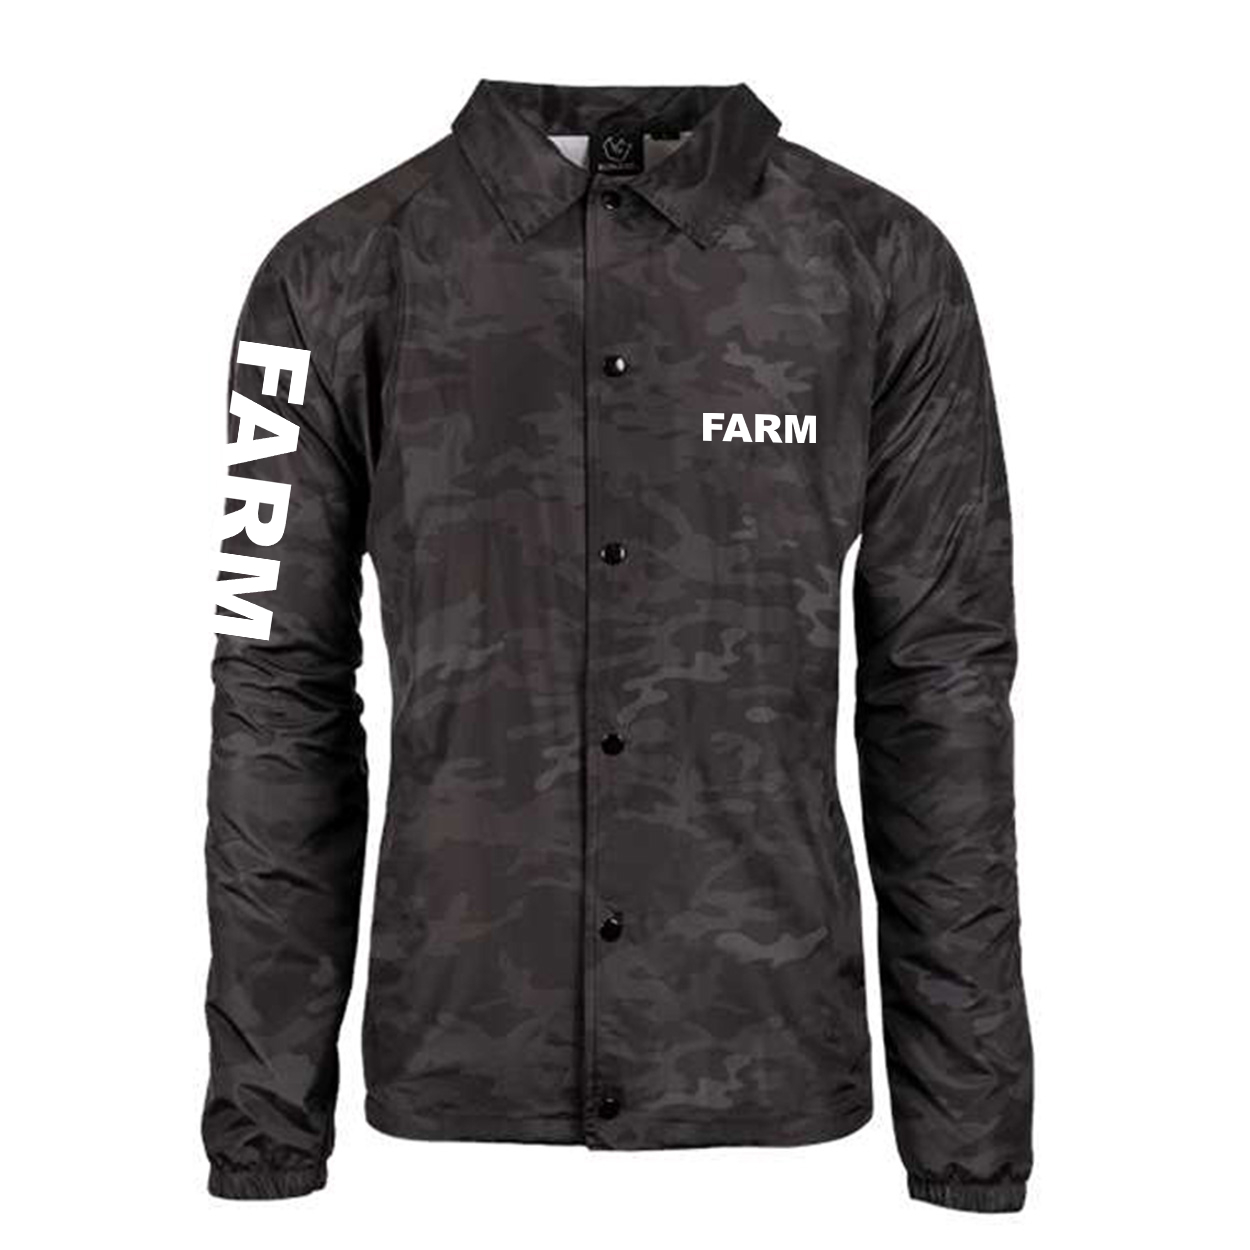 Farm Brand Logo Classic Mentor Jacket Black Camo